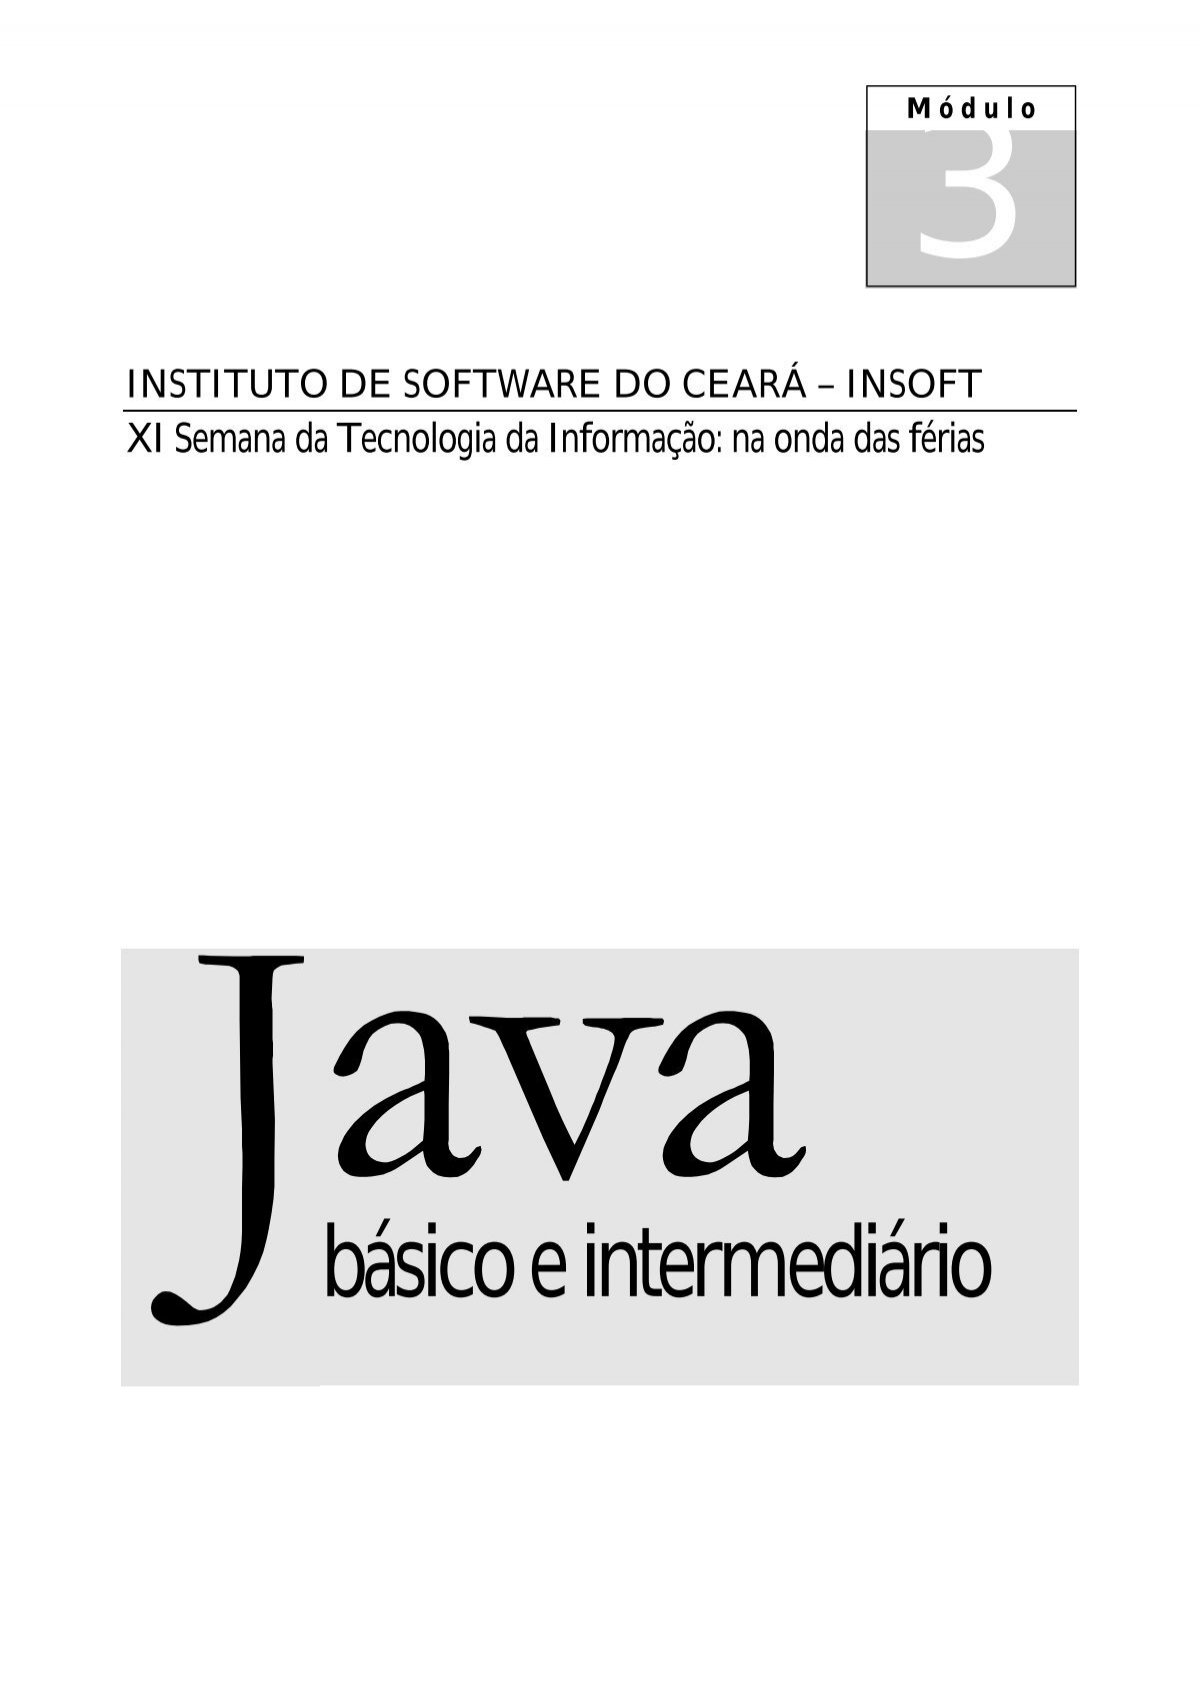 Notação matemática no SOPT - Stack Overflow em Português Meta